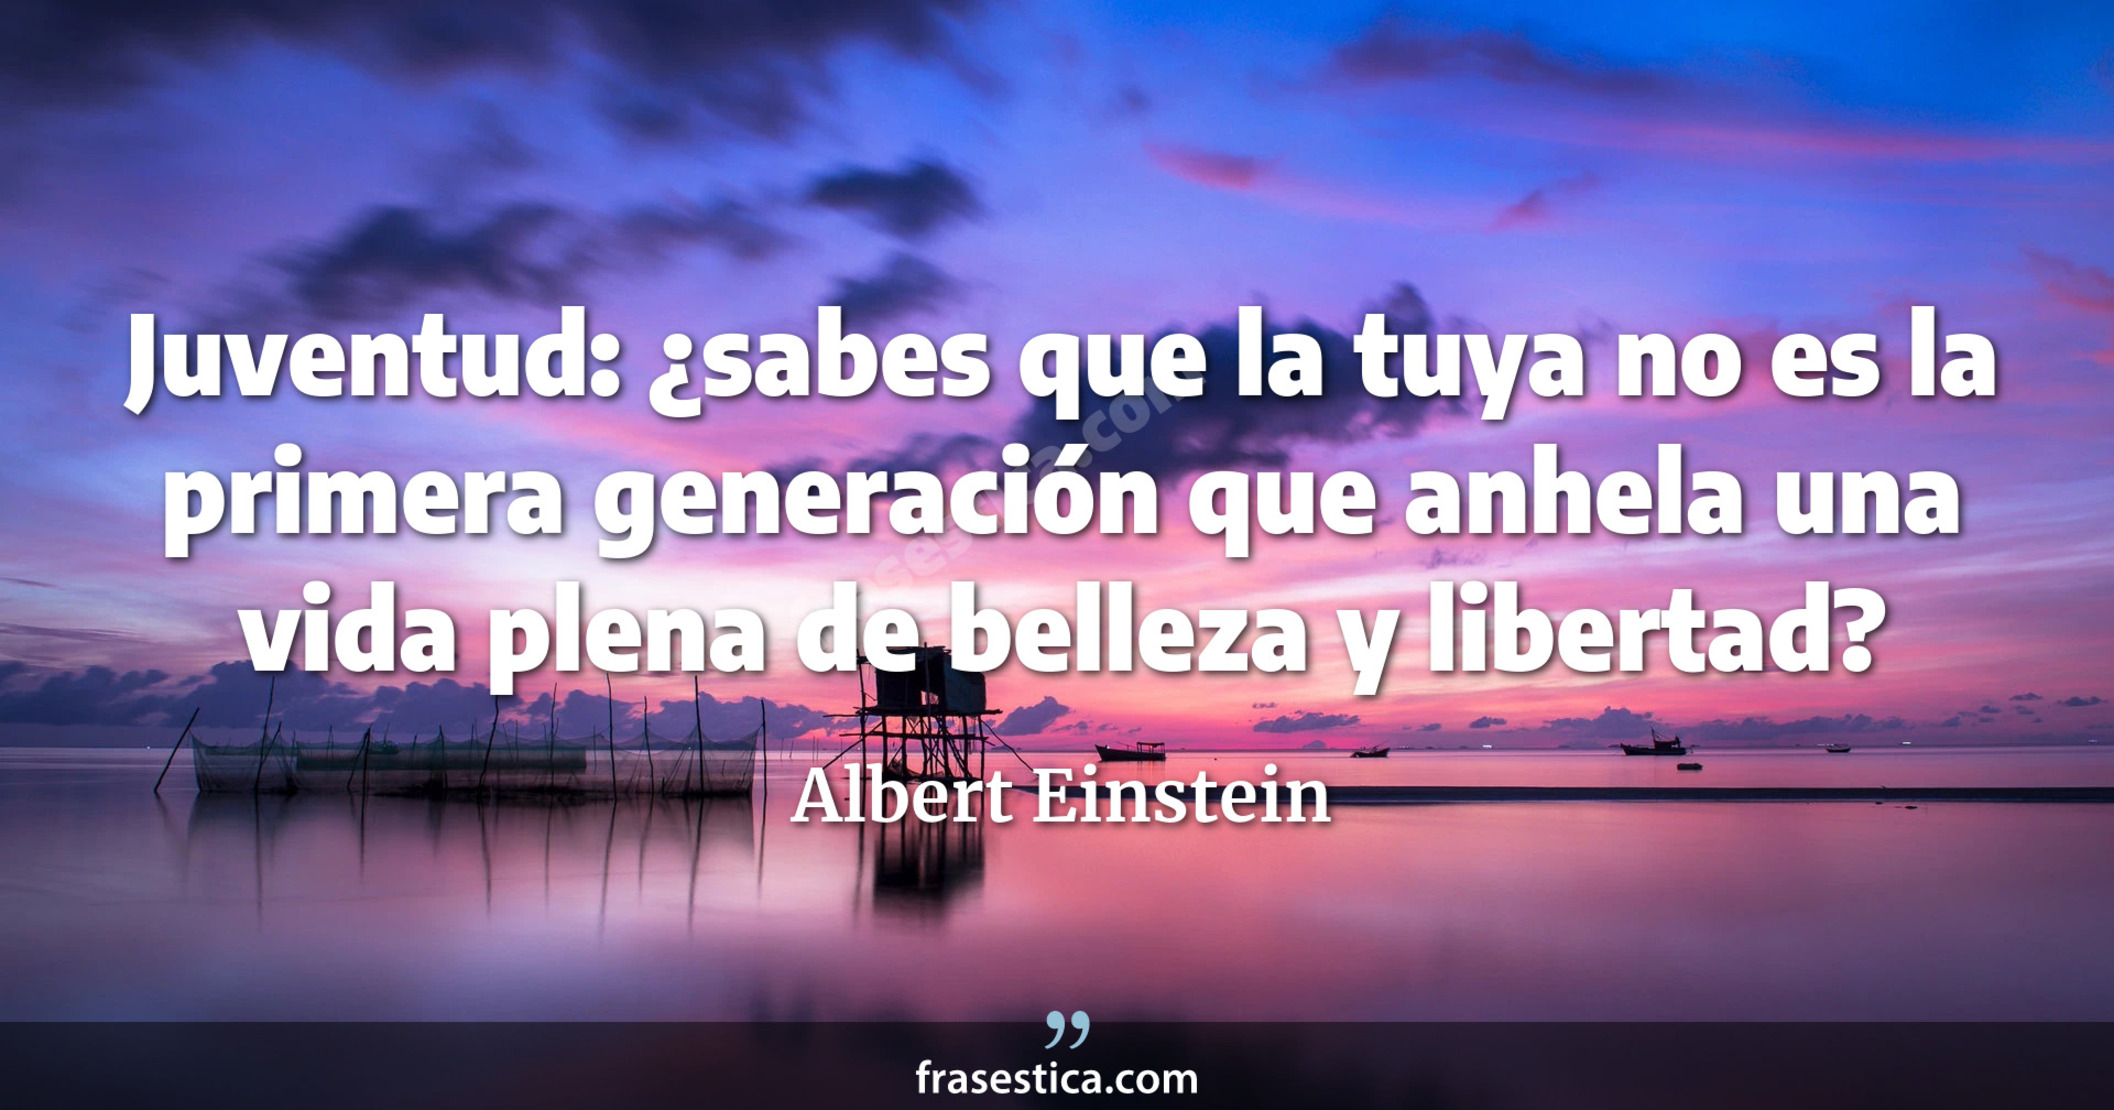 Juventud: ¿sabes que la tuya no es la primera generación que anhela una vida plena de belleza y libertad? - Albert Einstein